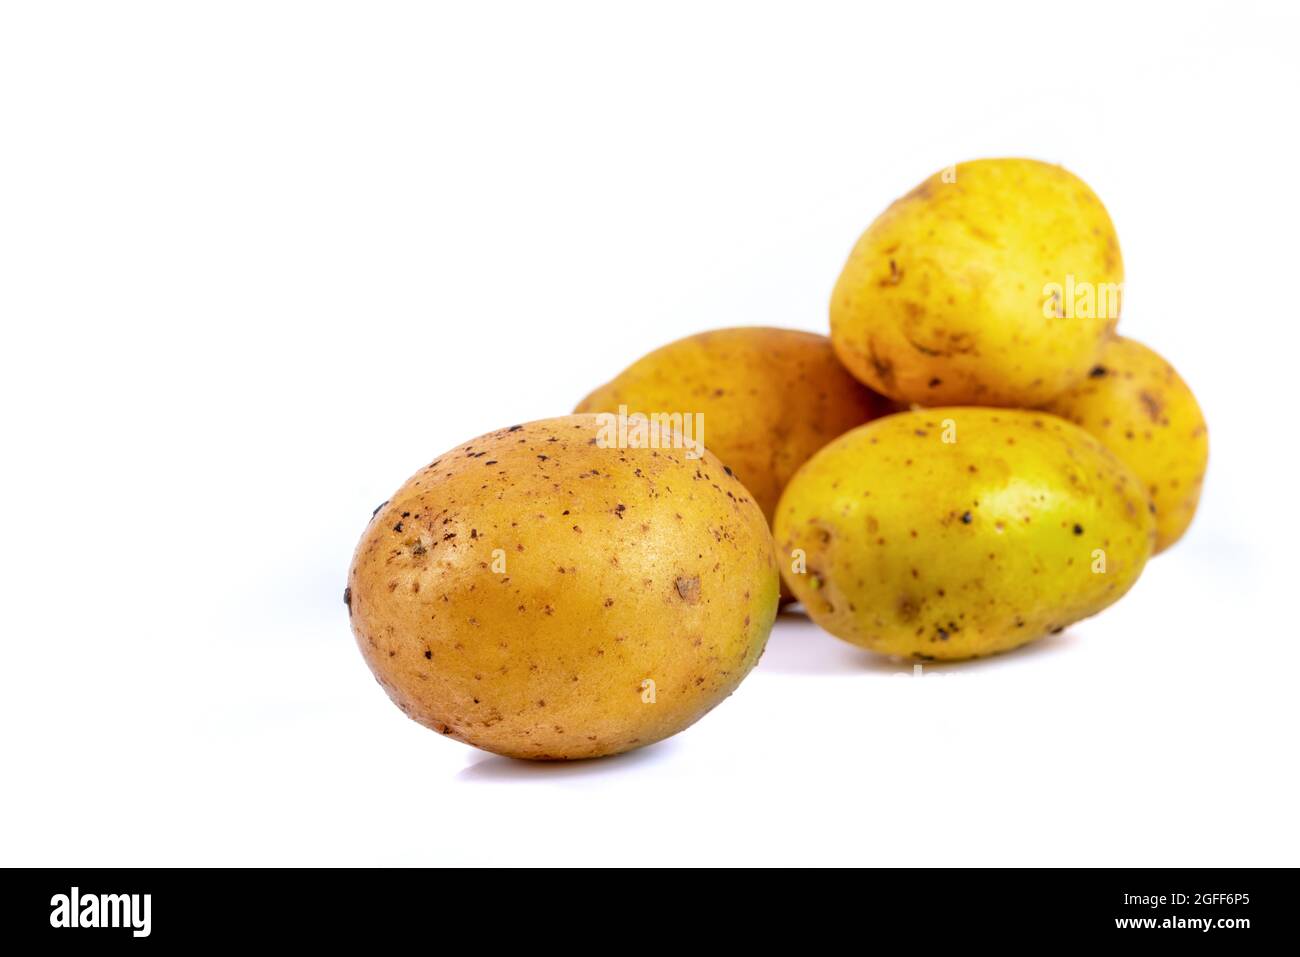 whole fresh potato on isolated white background Stock Photo